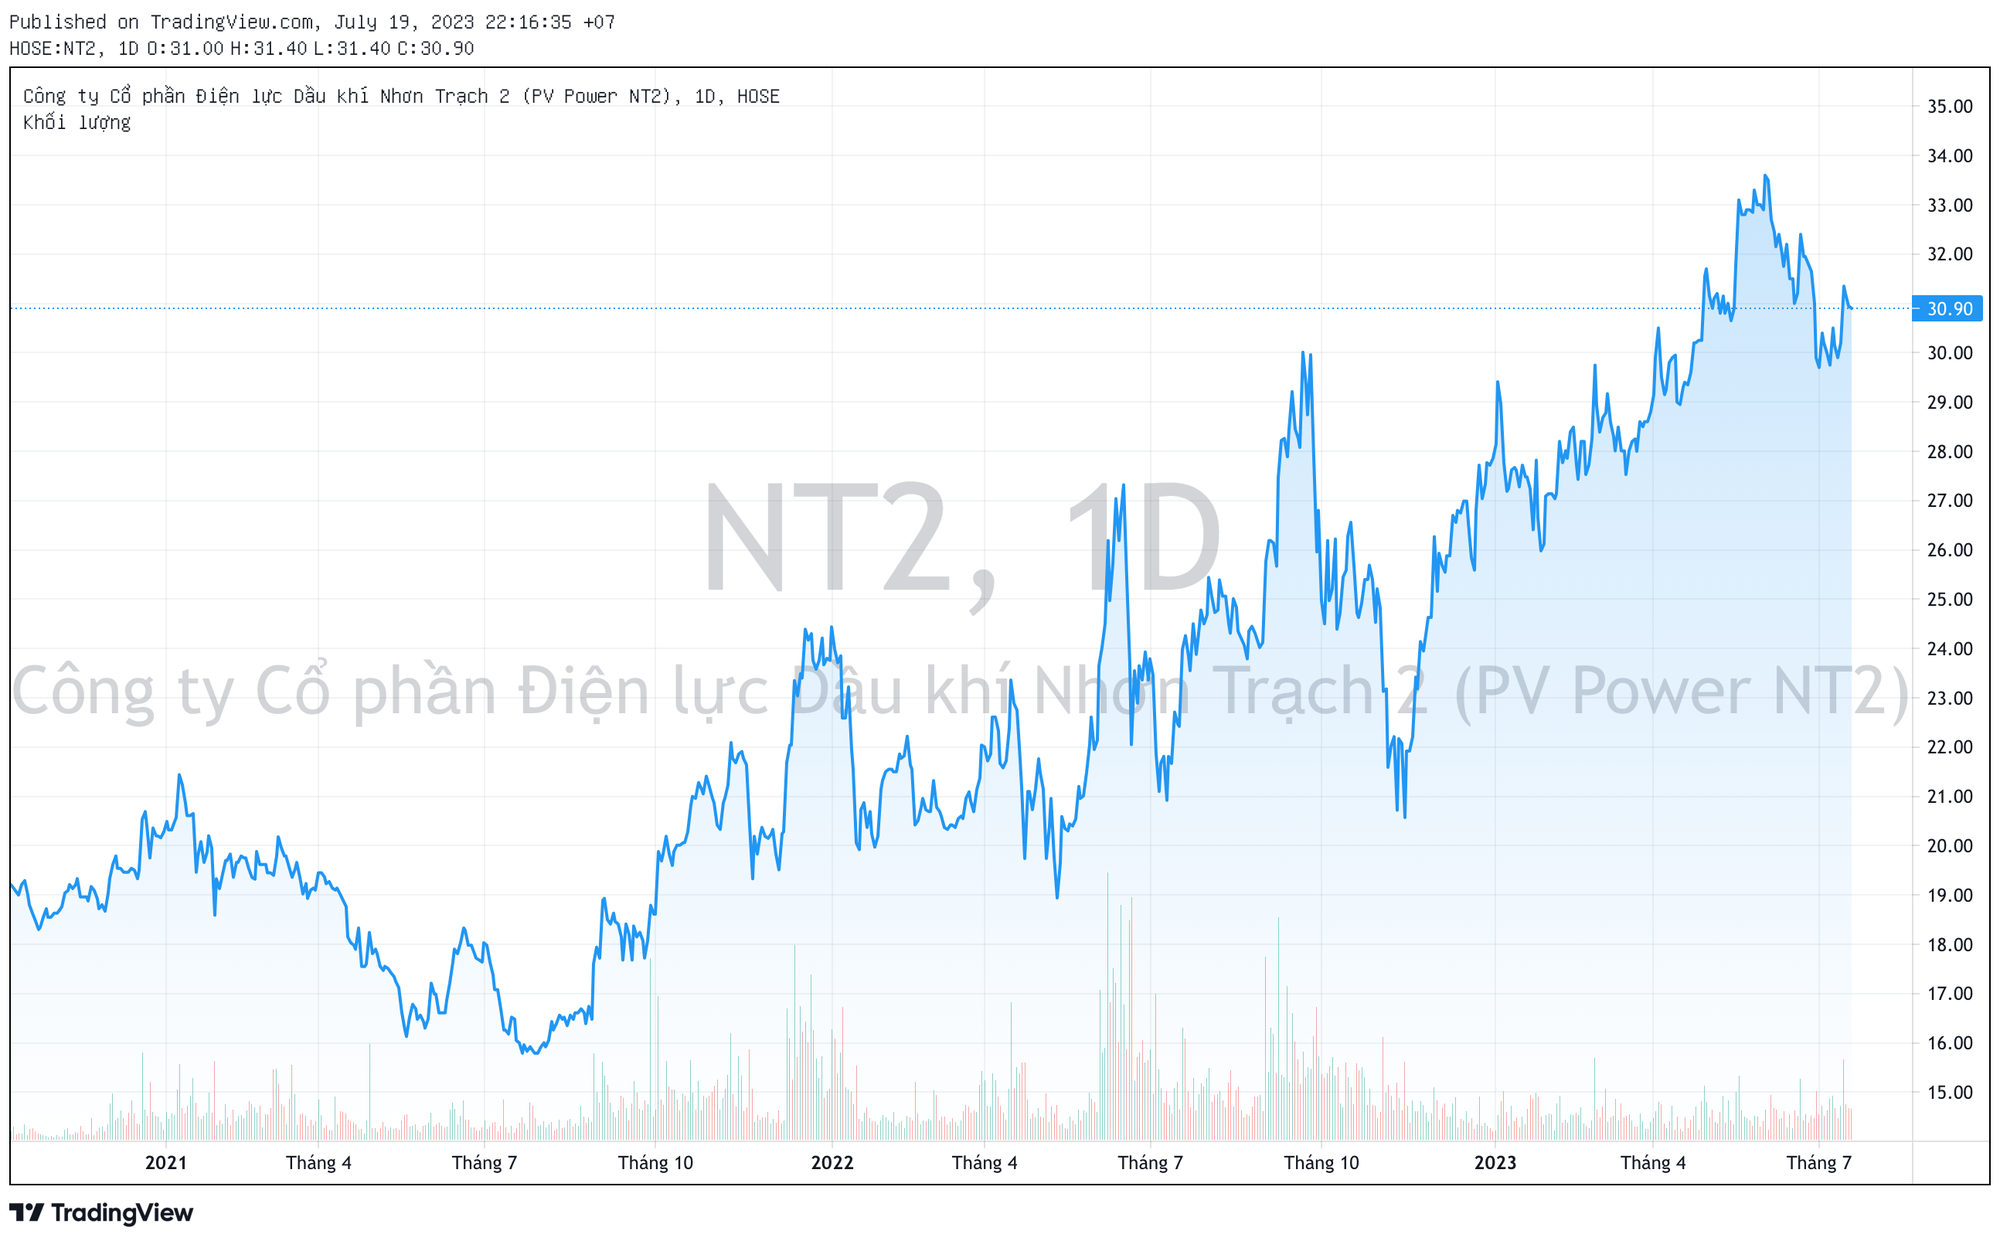 Chi phí vốn tăng cao, Điện lực Nhơn Trạch 2 (NT2) báo lãi quý 2 sụt giảm 60% so với cùng kỳ năm trước - Ảnh 2.